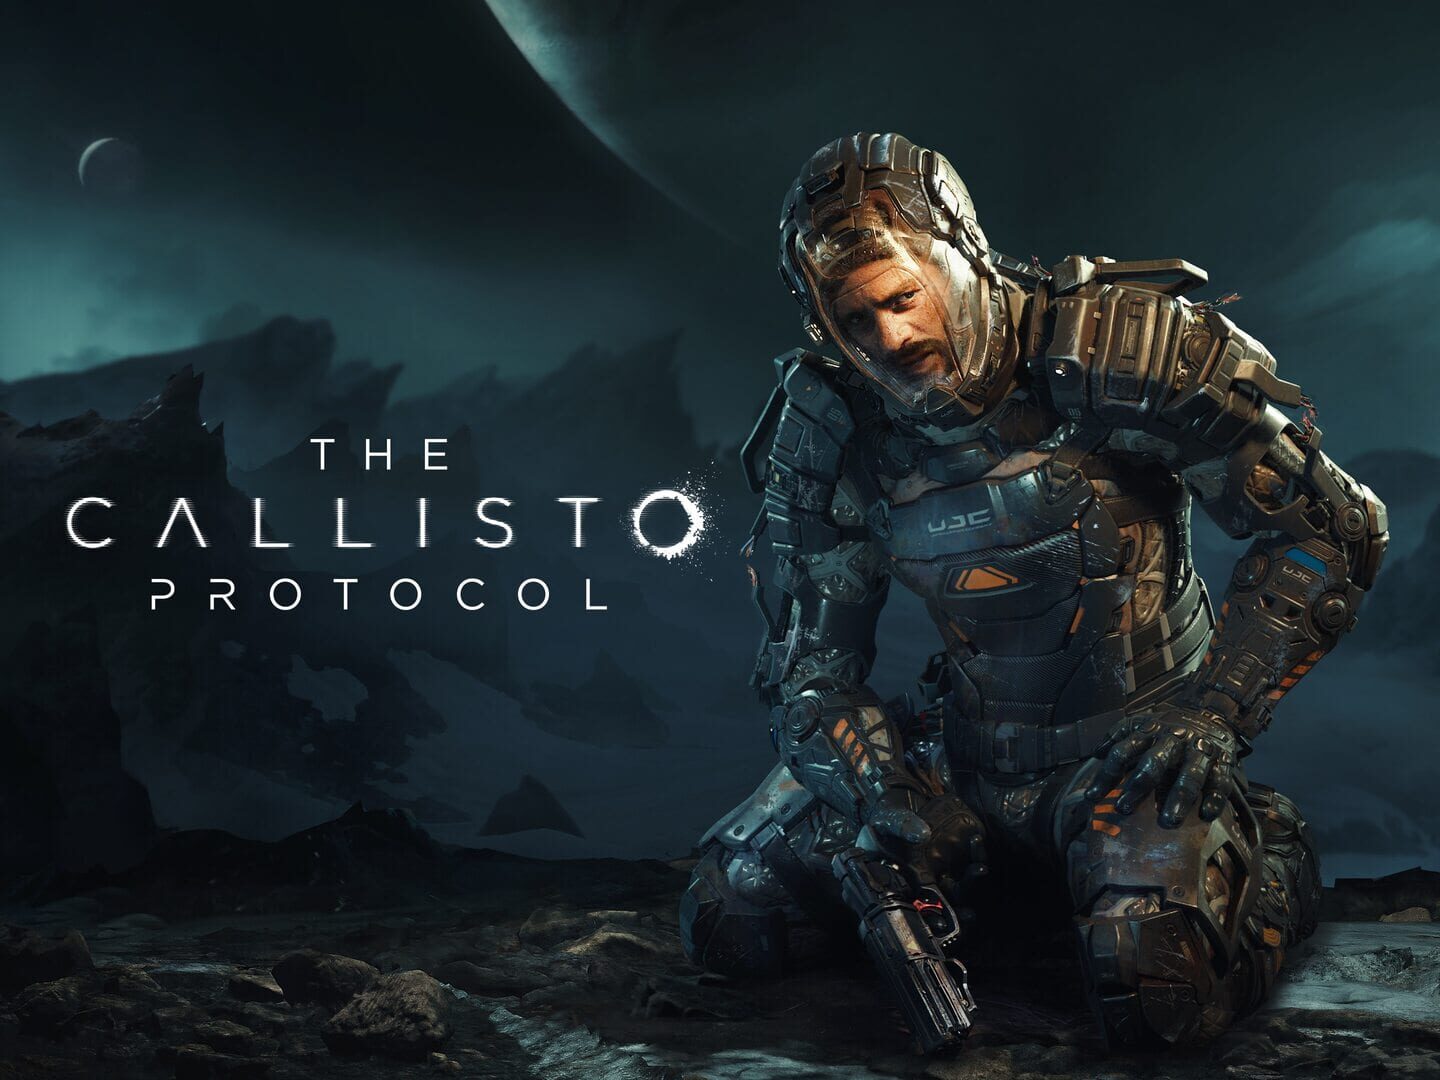 Arte - The Callisto Protocol